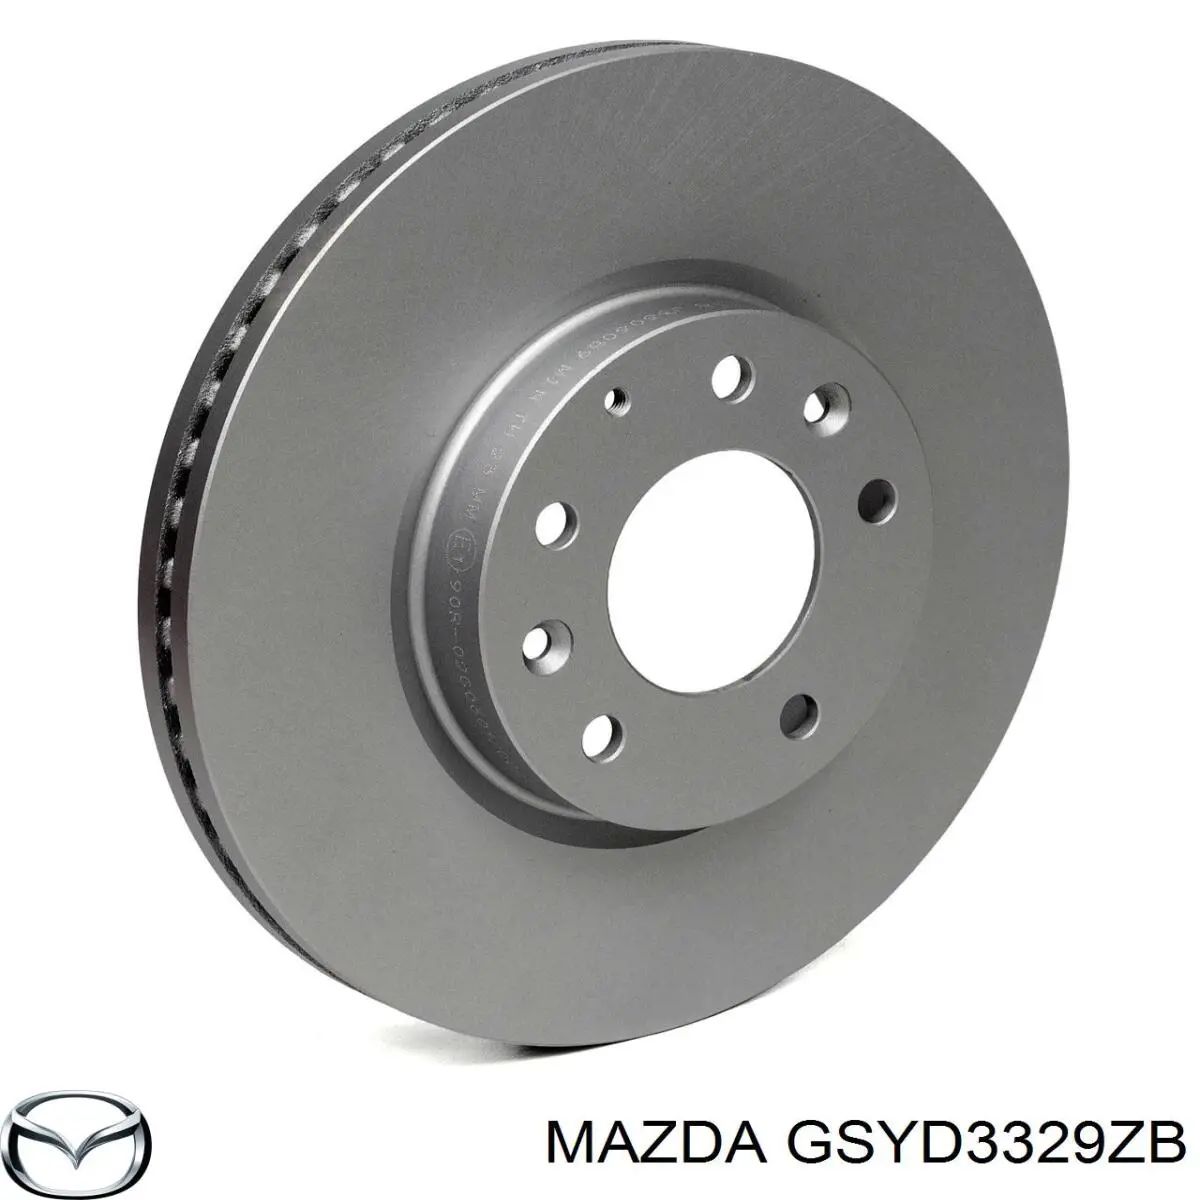 GSYD3329ZB Mazda пластина противоскрипная крепления тормозной колодки передней